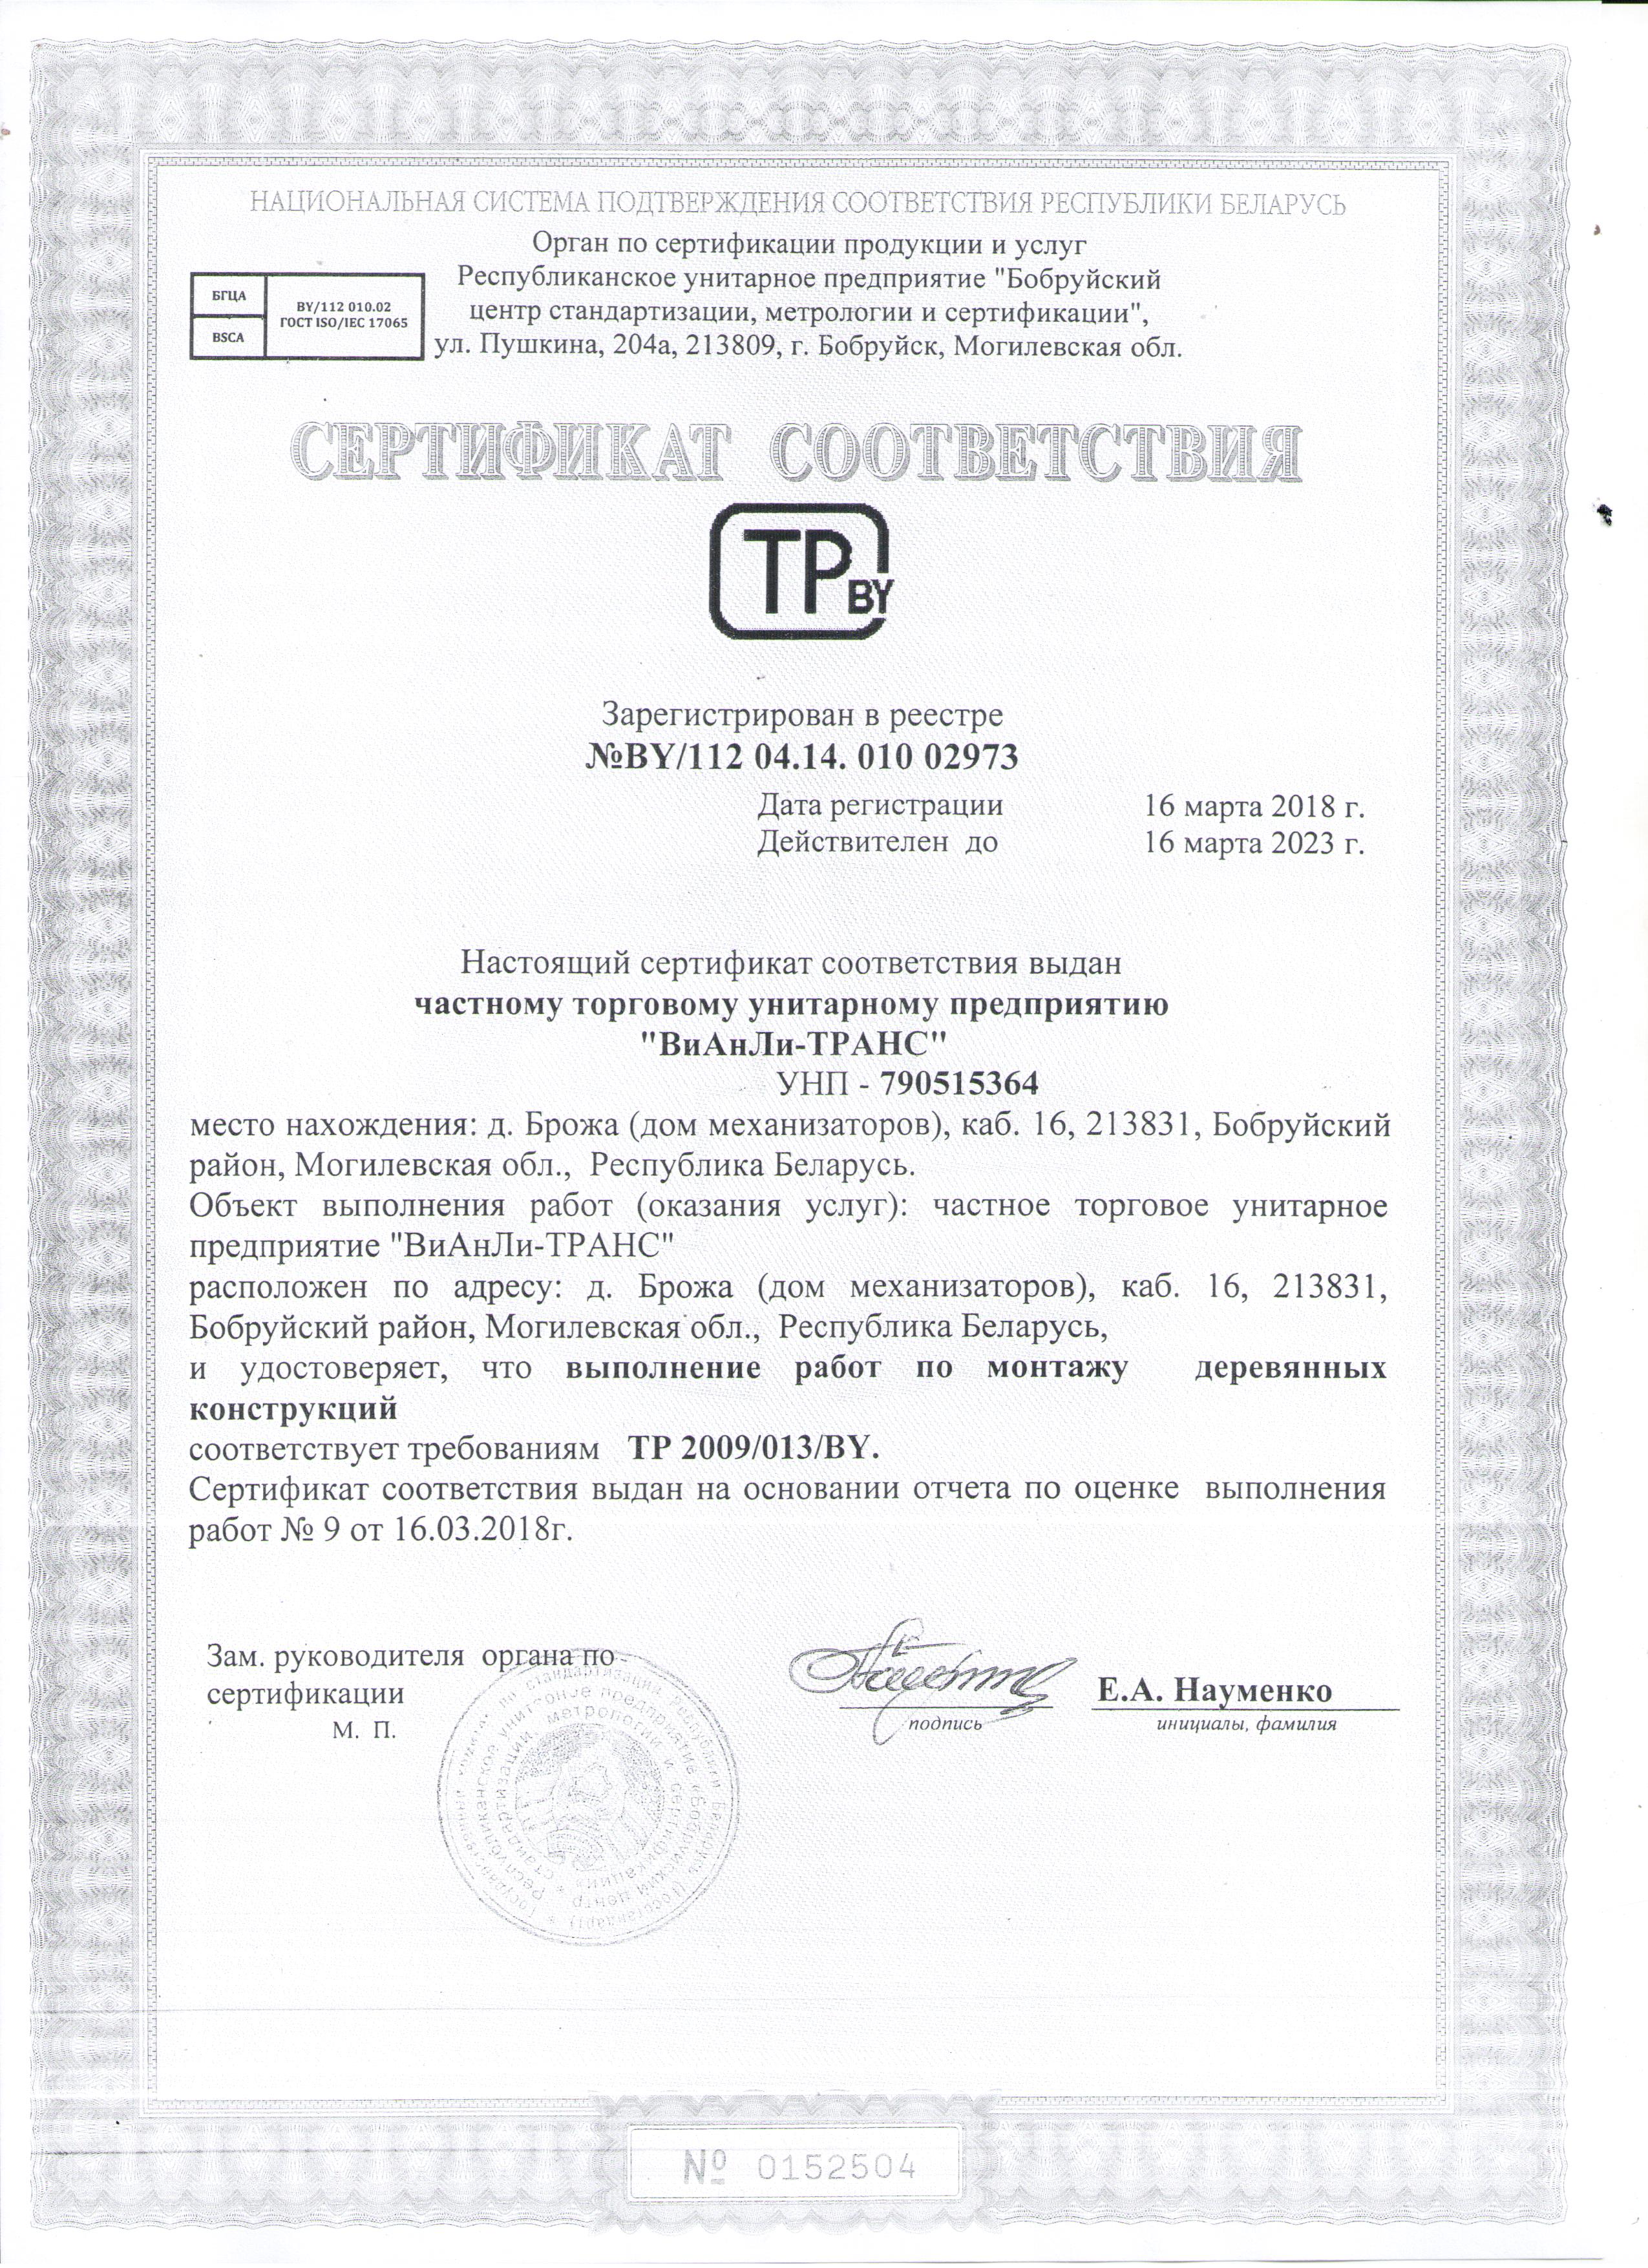 Сертификат соответствия BY/112 04.14. 010 02973